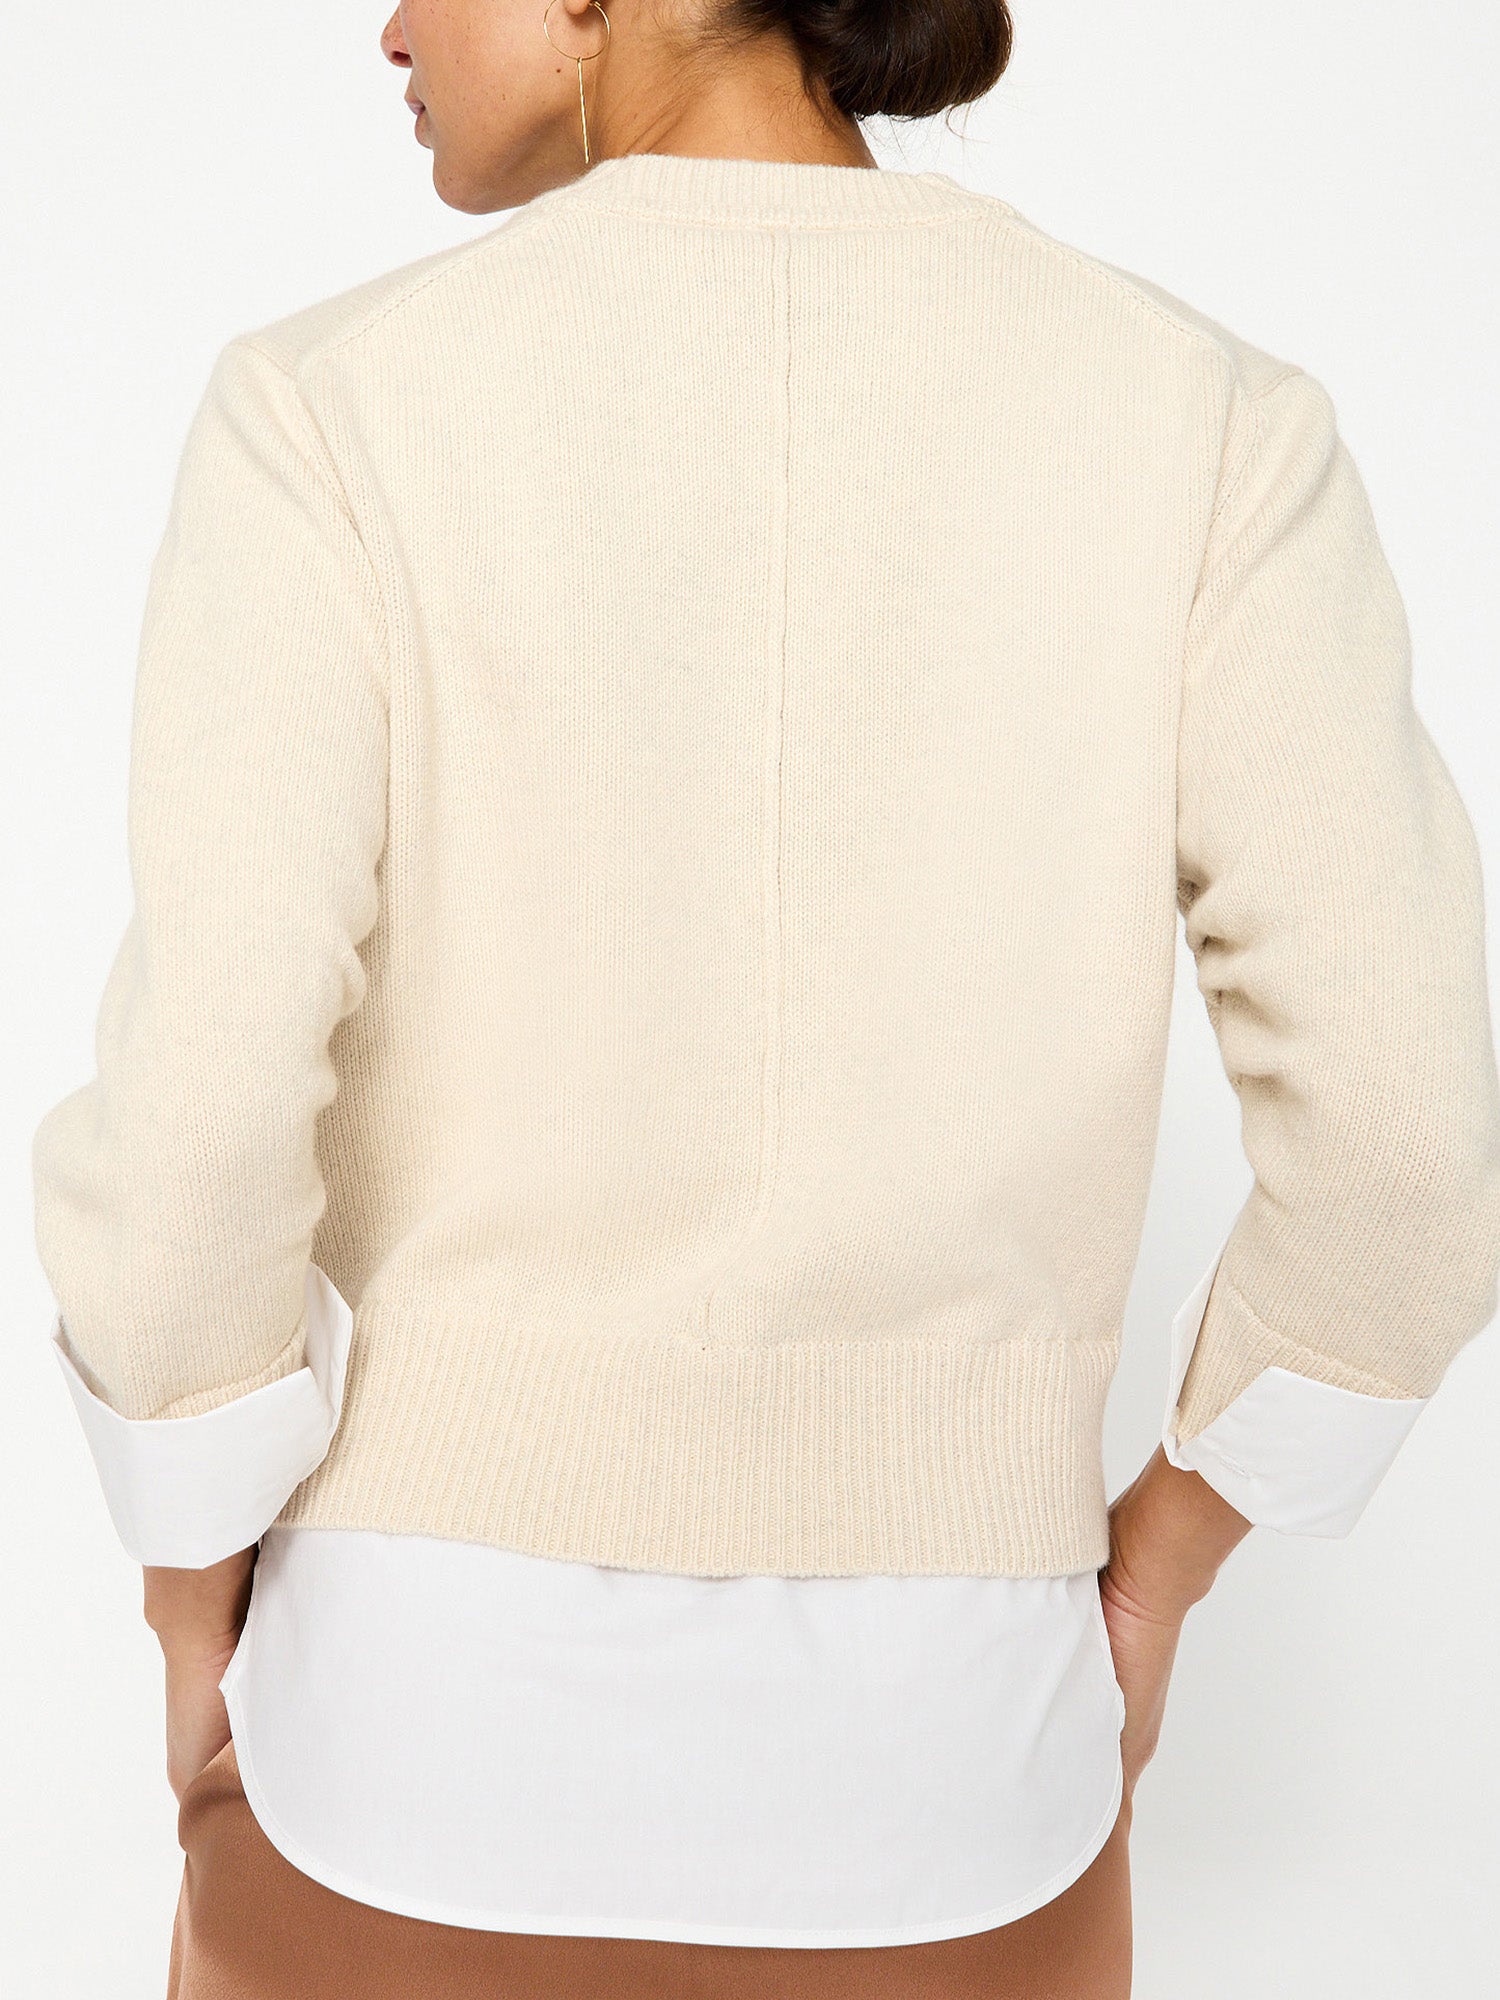 Raya ivory layered crewneck sweater back view